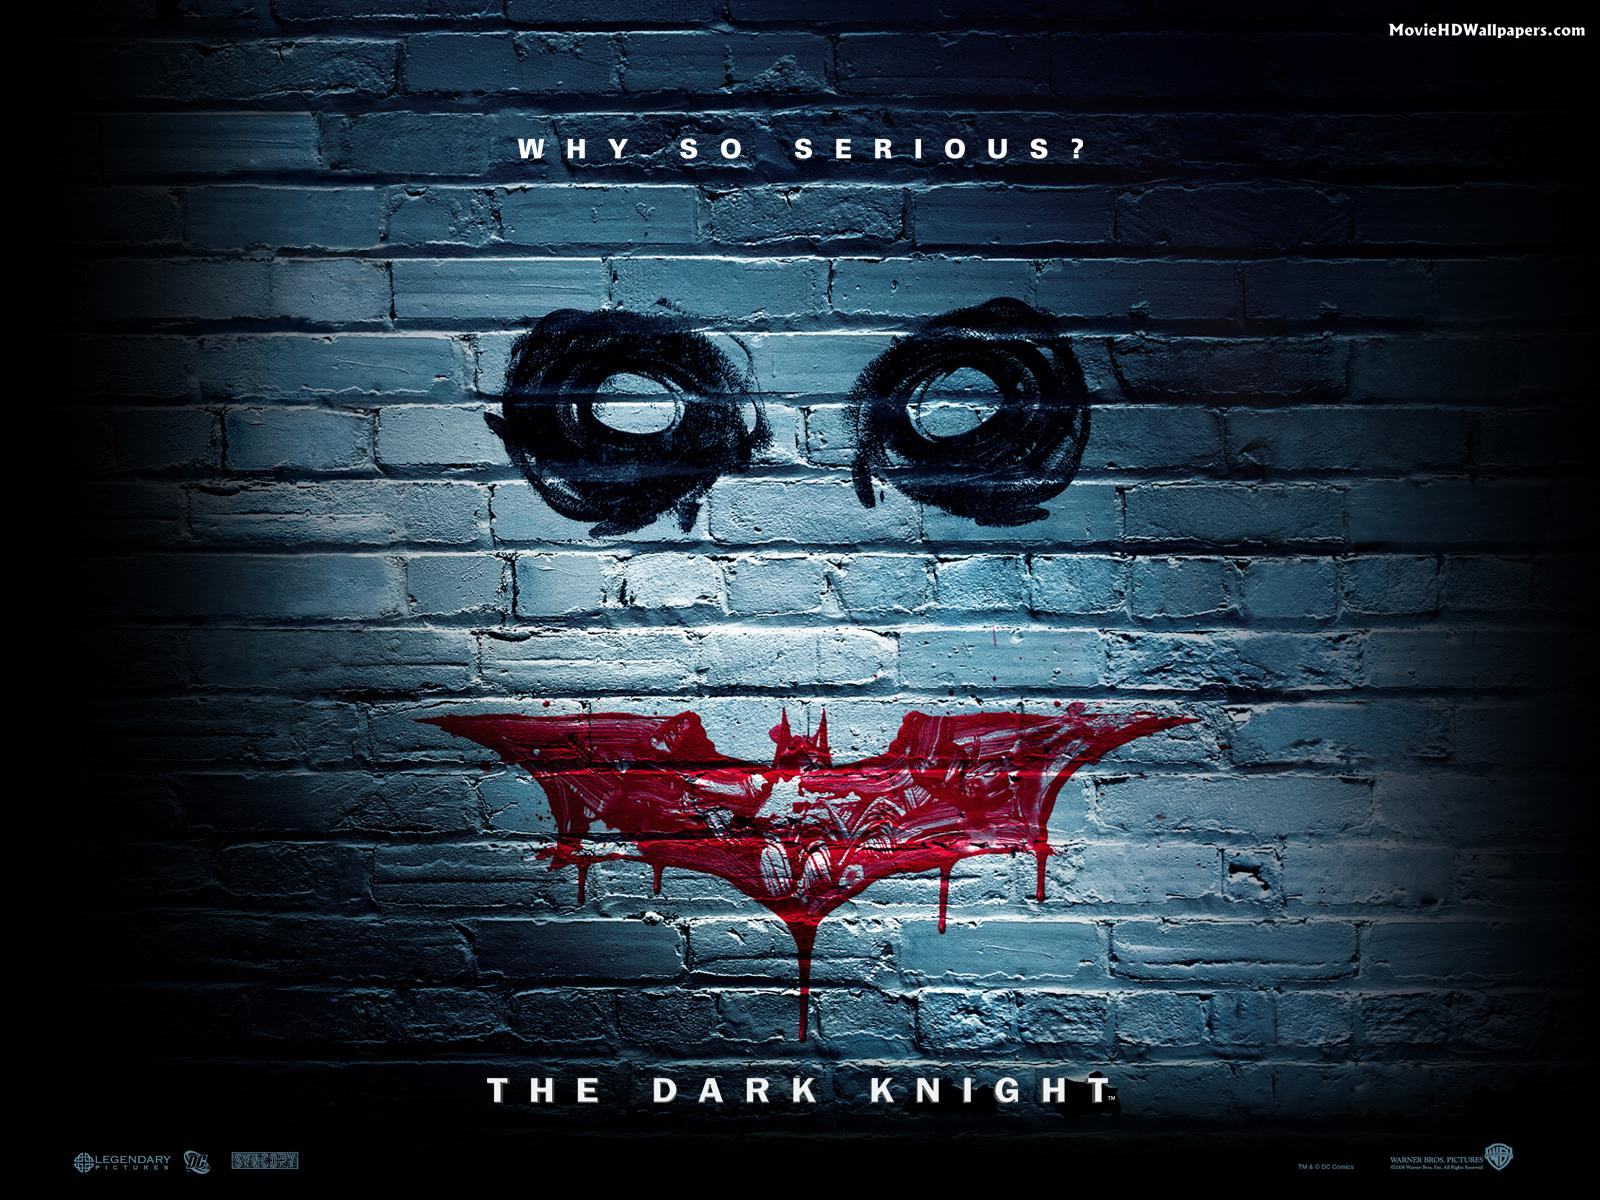 Batman The Dark Knight (2008) | Movie HD Wallpapers